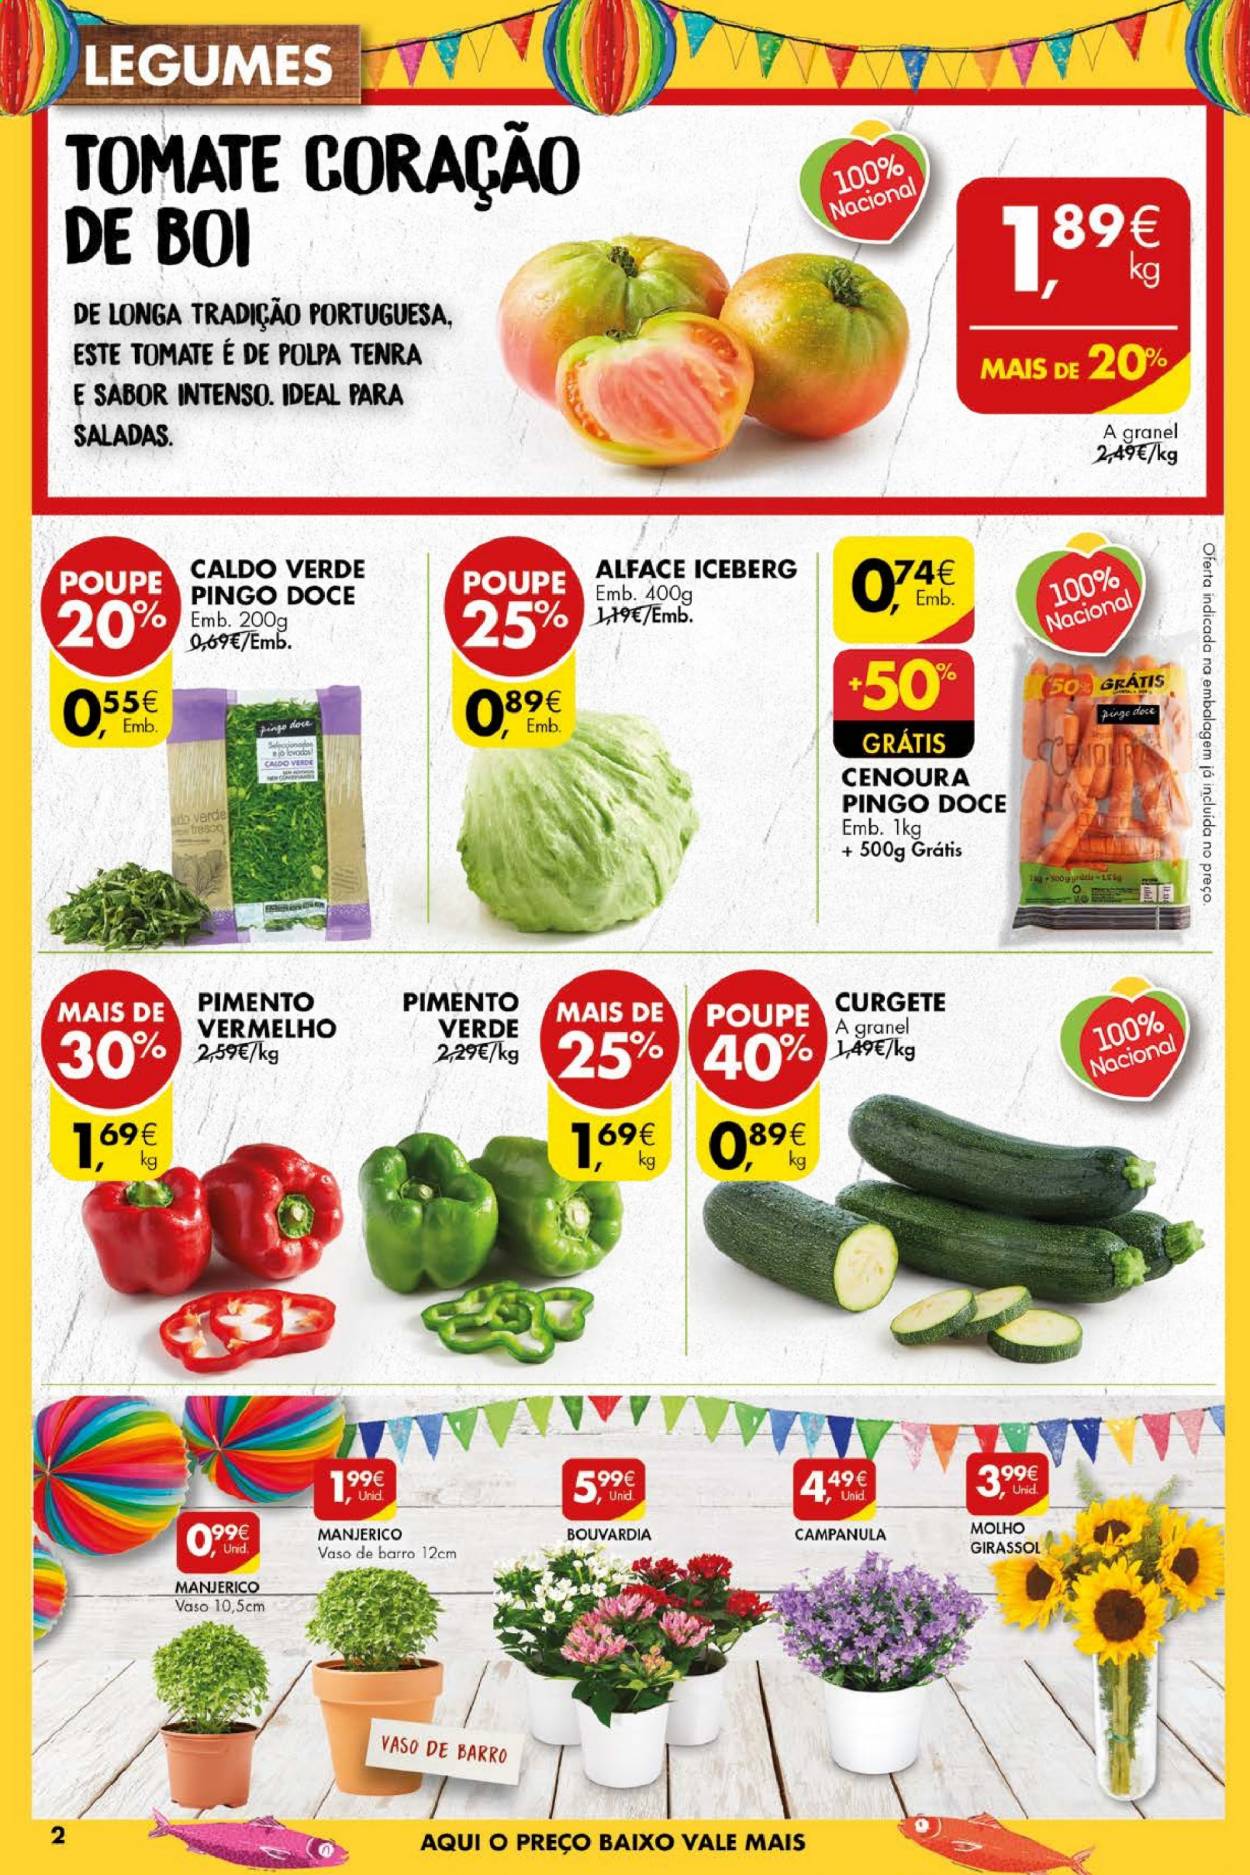 thumbnail - Folheto Pingo Doce - 22.6.2021 - 28.6.2021 - Produtos em promoção - alface, cenoura, legumes, caldo verde, molho, vaso. Página 2.